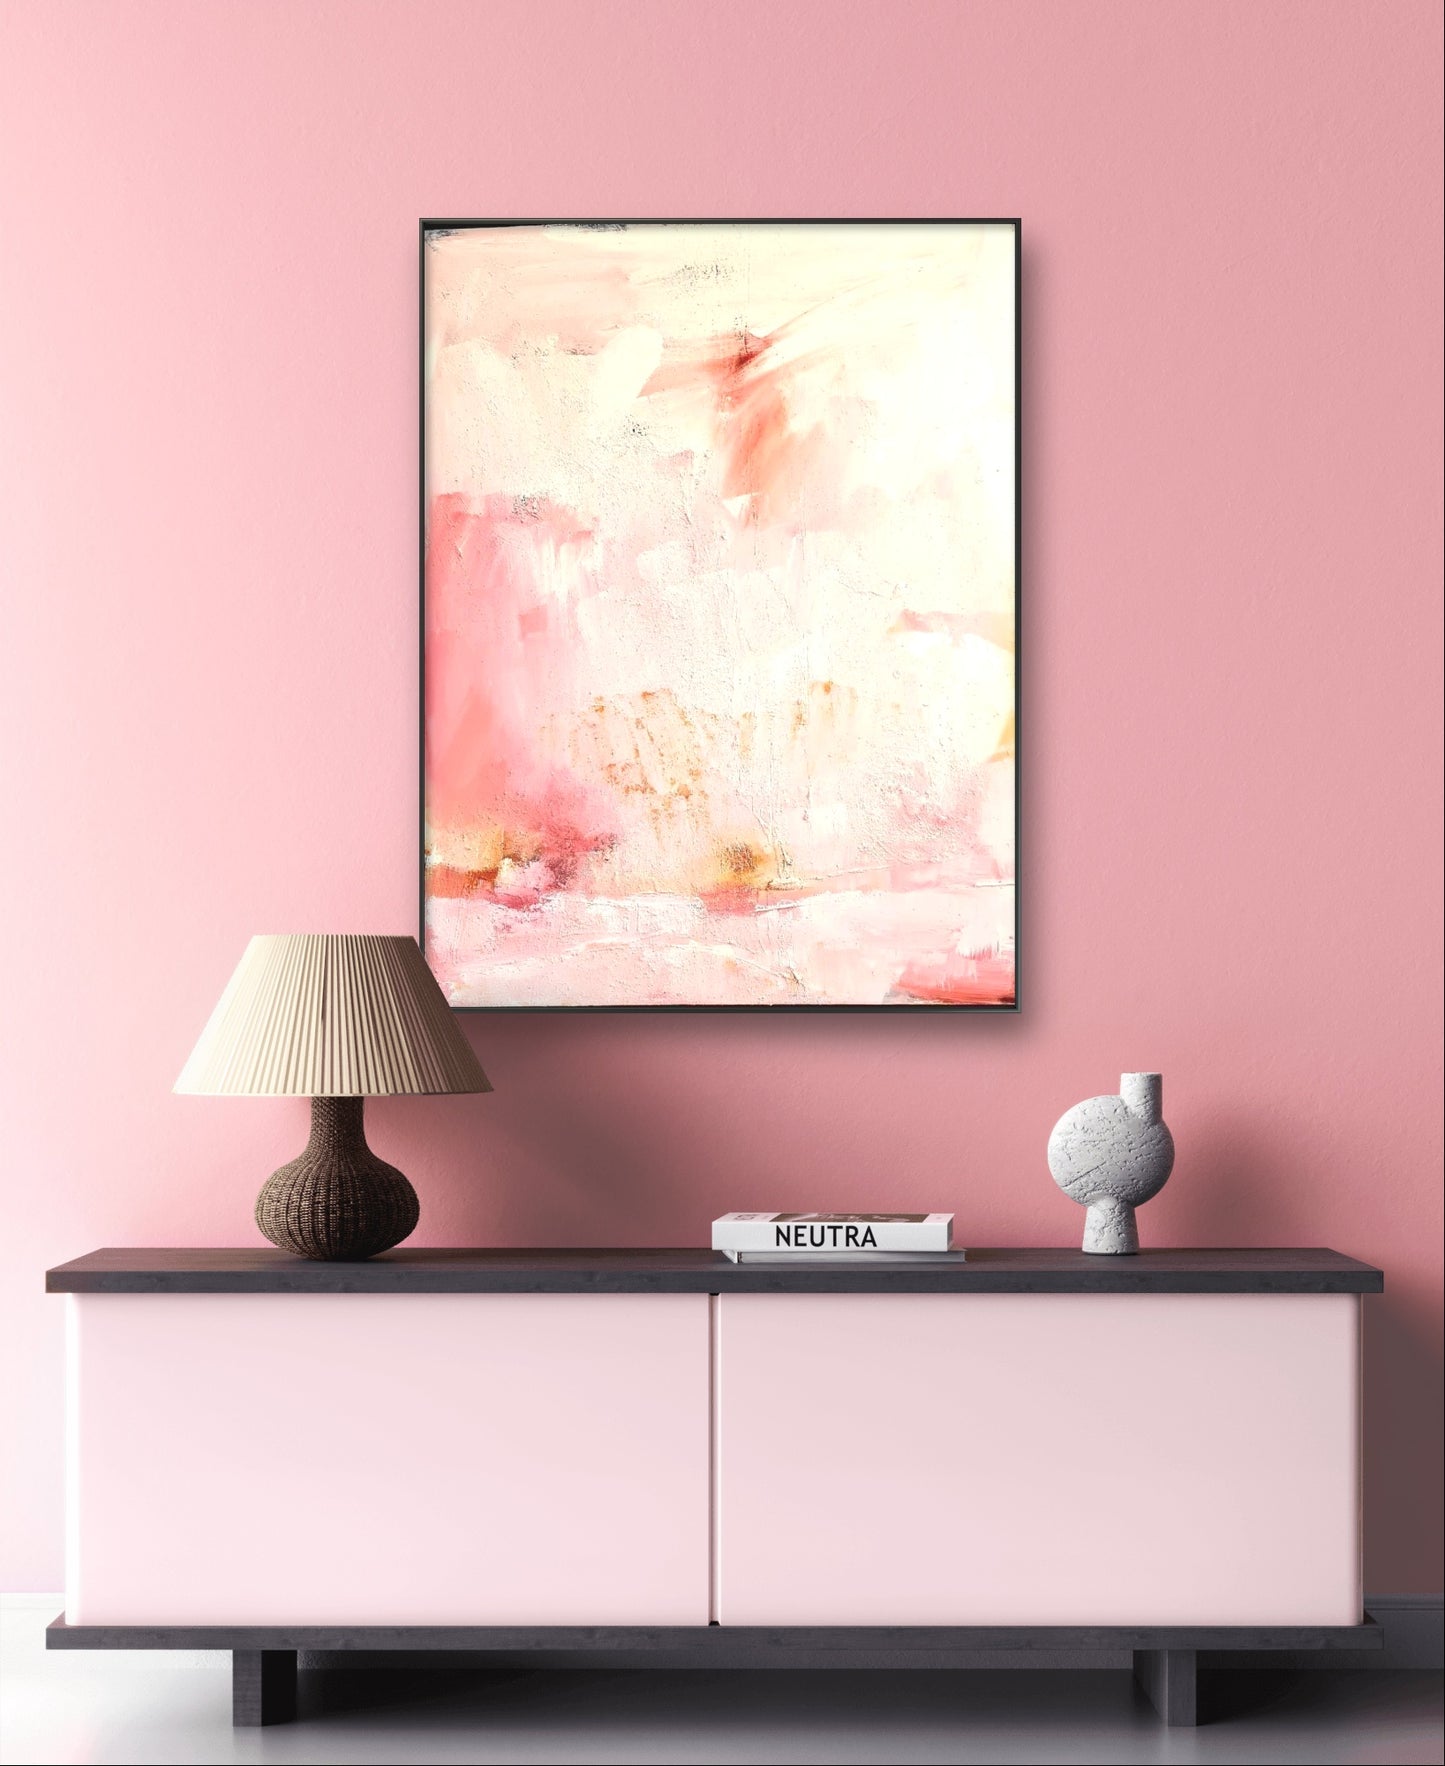 Auftragskunst, abstrakte Bilder, Individuelles Kunstwerk - Sanftes Rosa-Weißes Bild auf Bestellung,rosa-pastell-bilder-kaufen, abstrakte Bilder kaufen ,